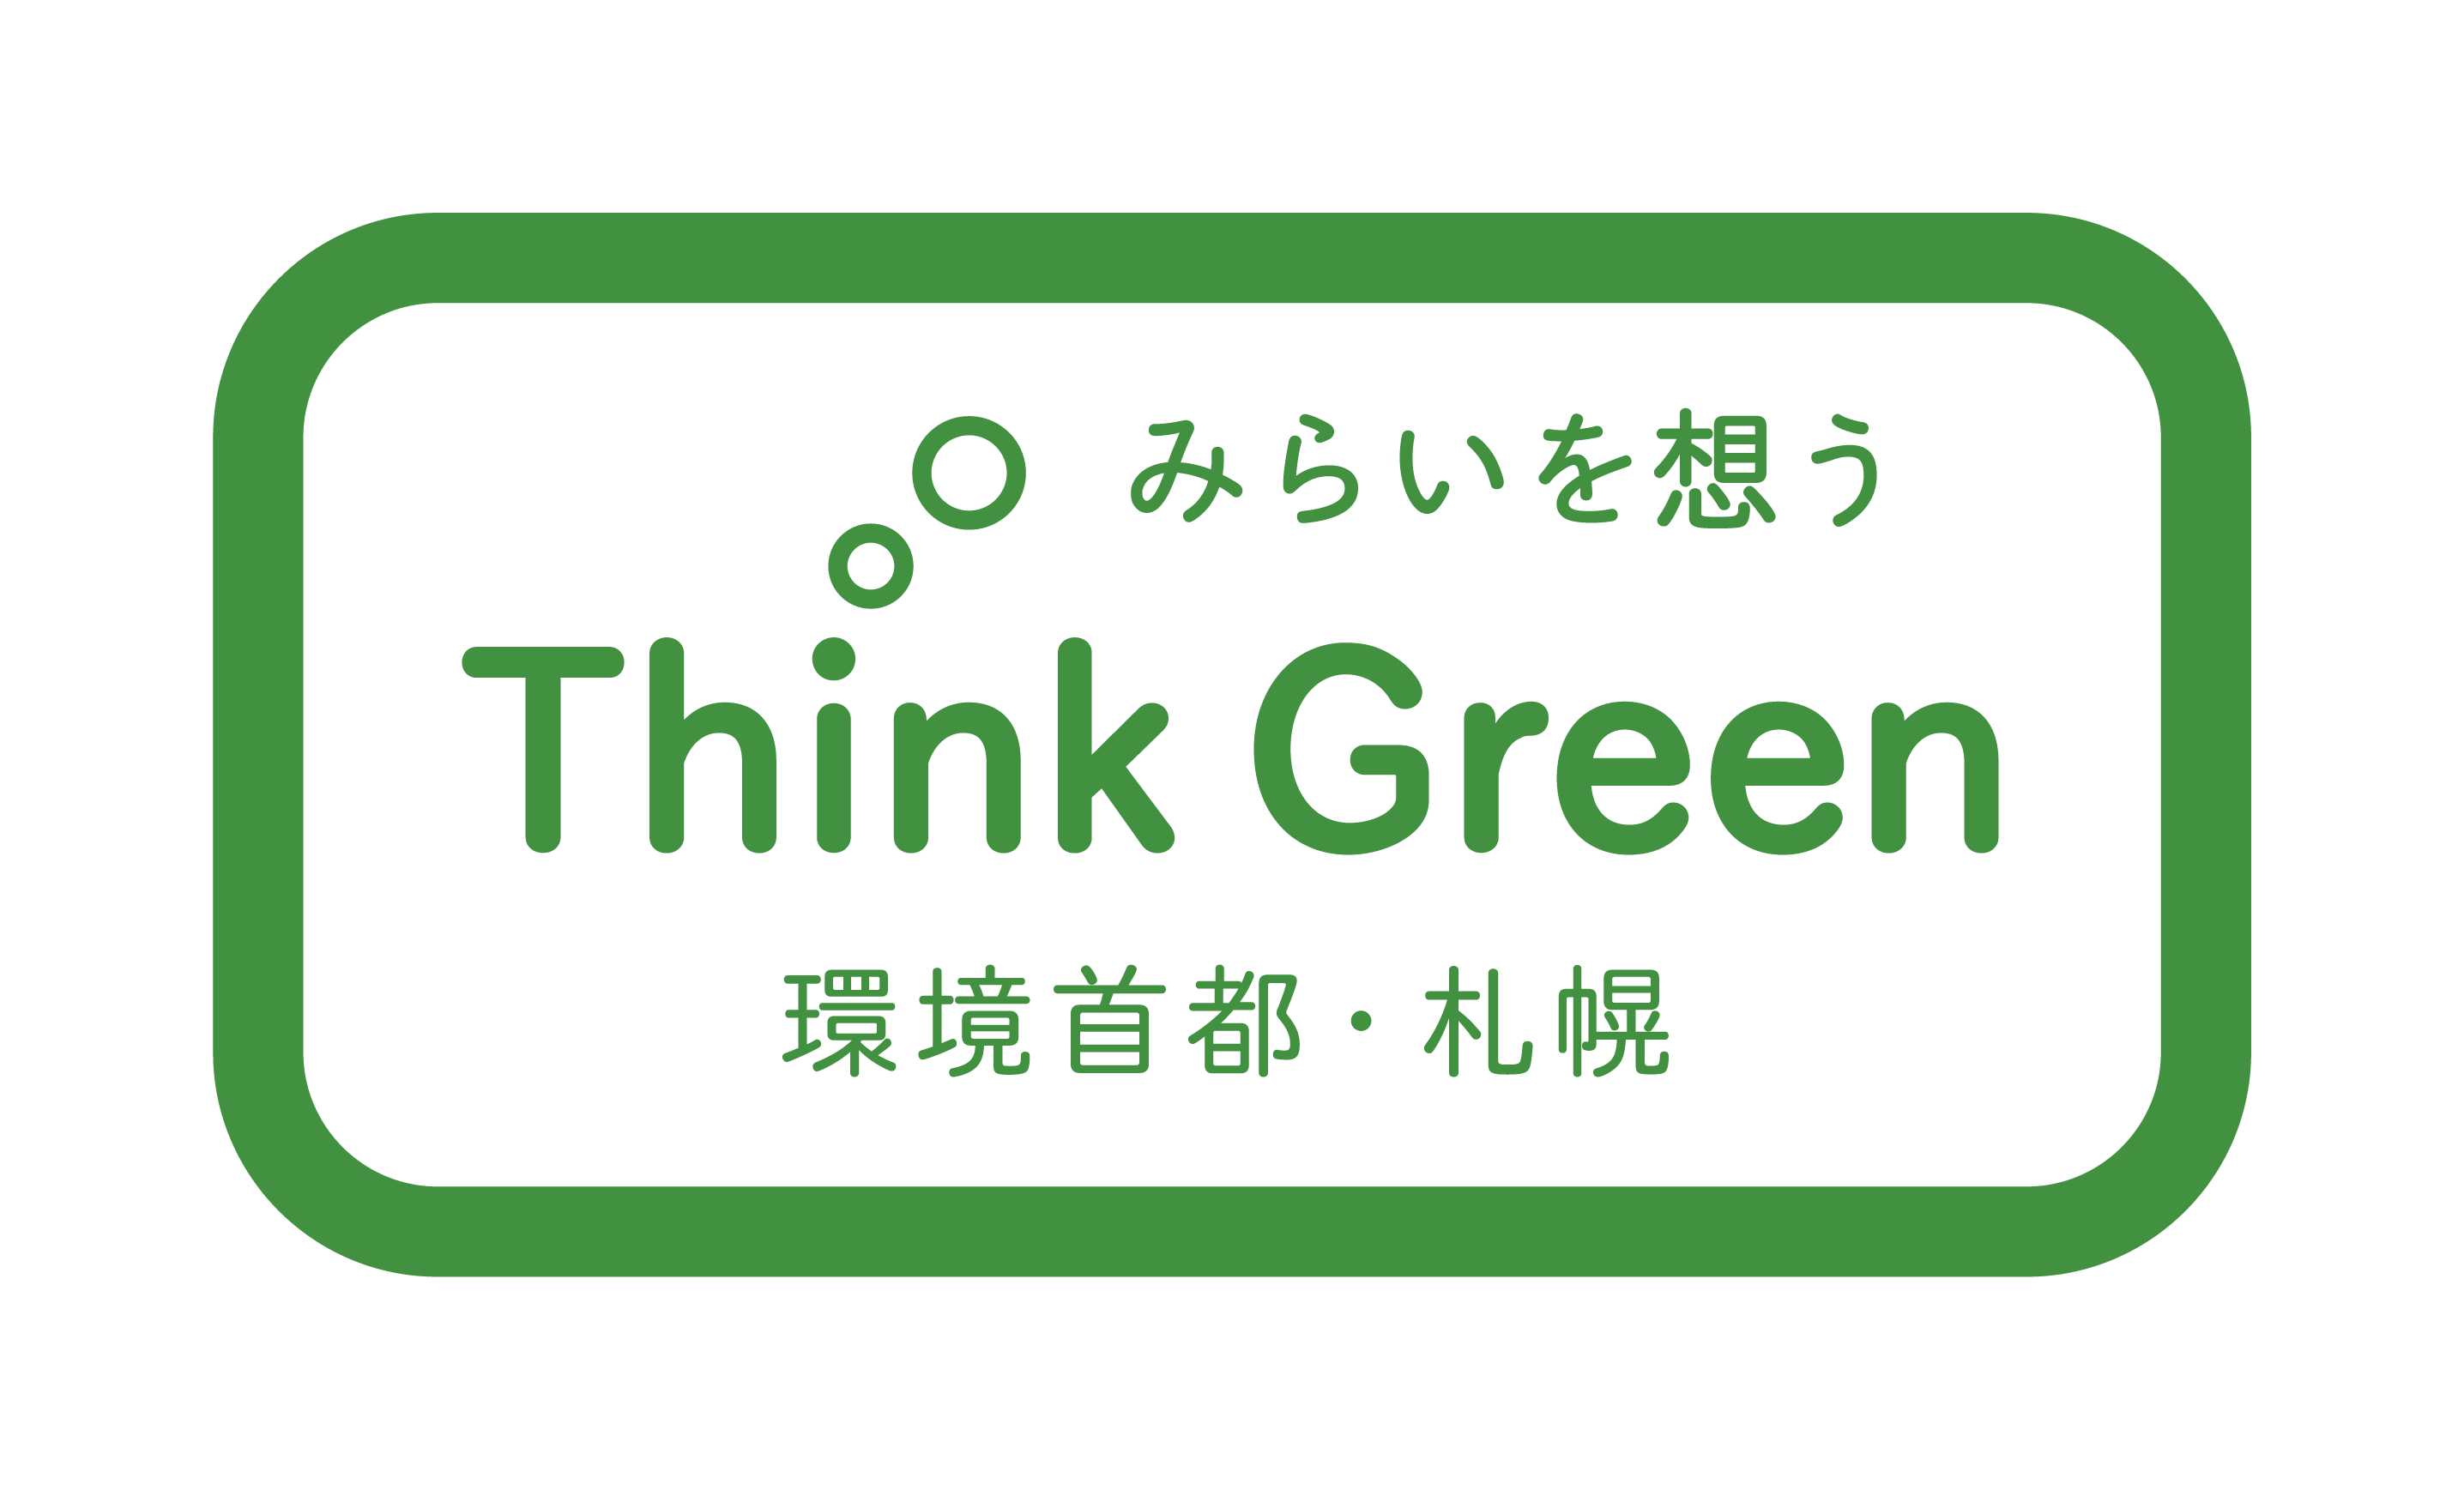 「心豊かにいつまでも安心して暮らせるゼロカーボン都市」を実現するために。「環境首都」を目指す札幌市の取組を紹介します。